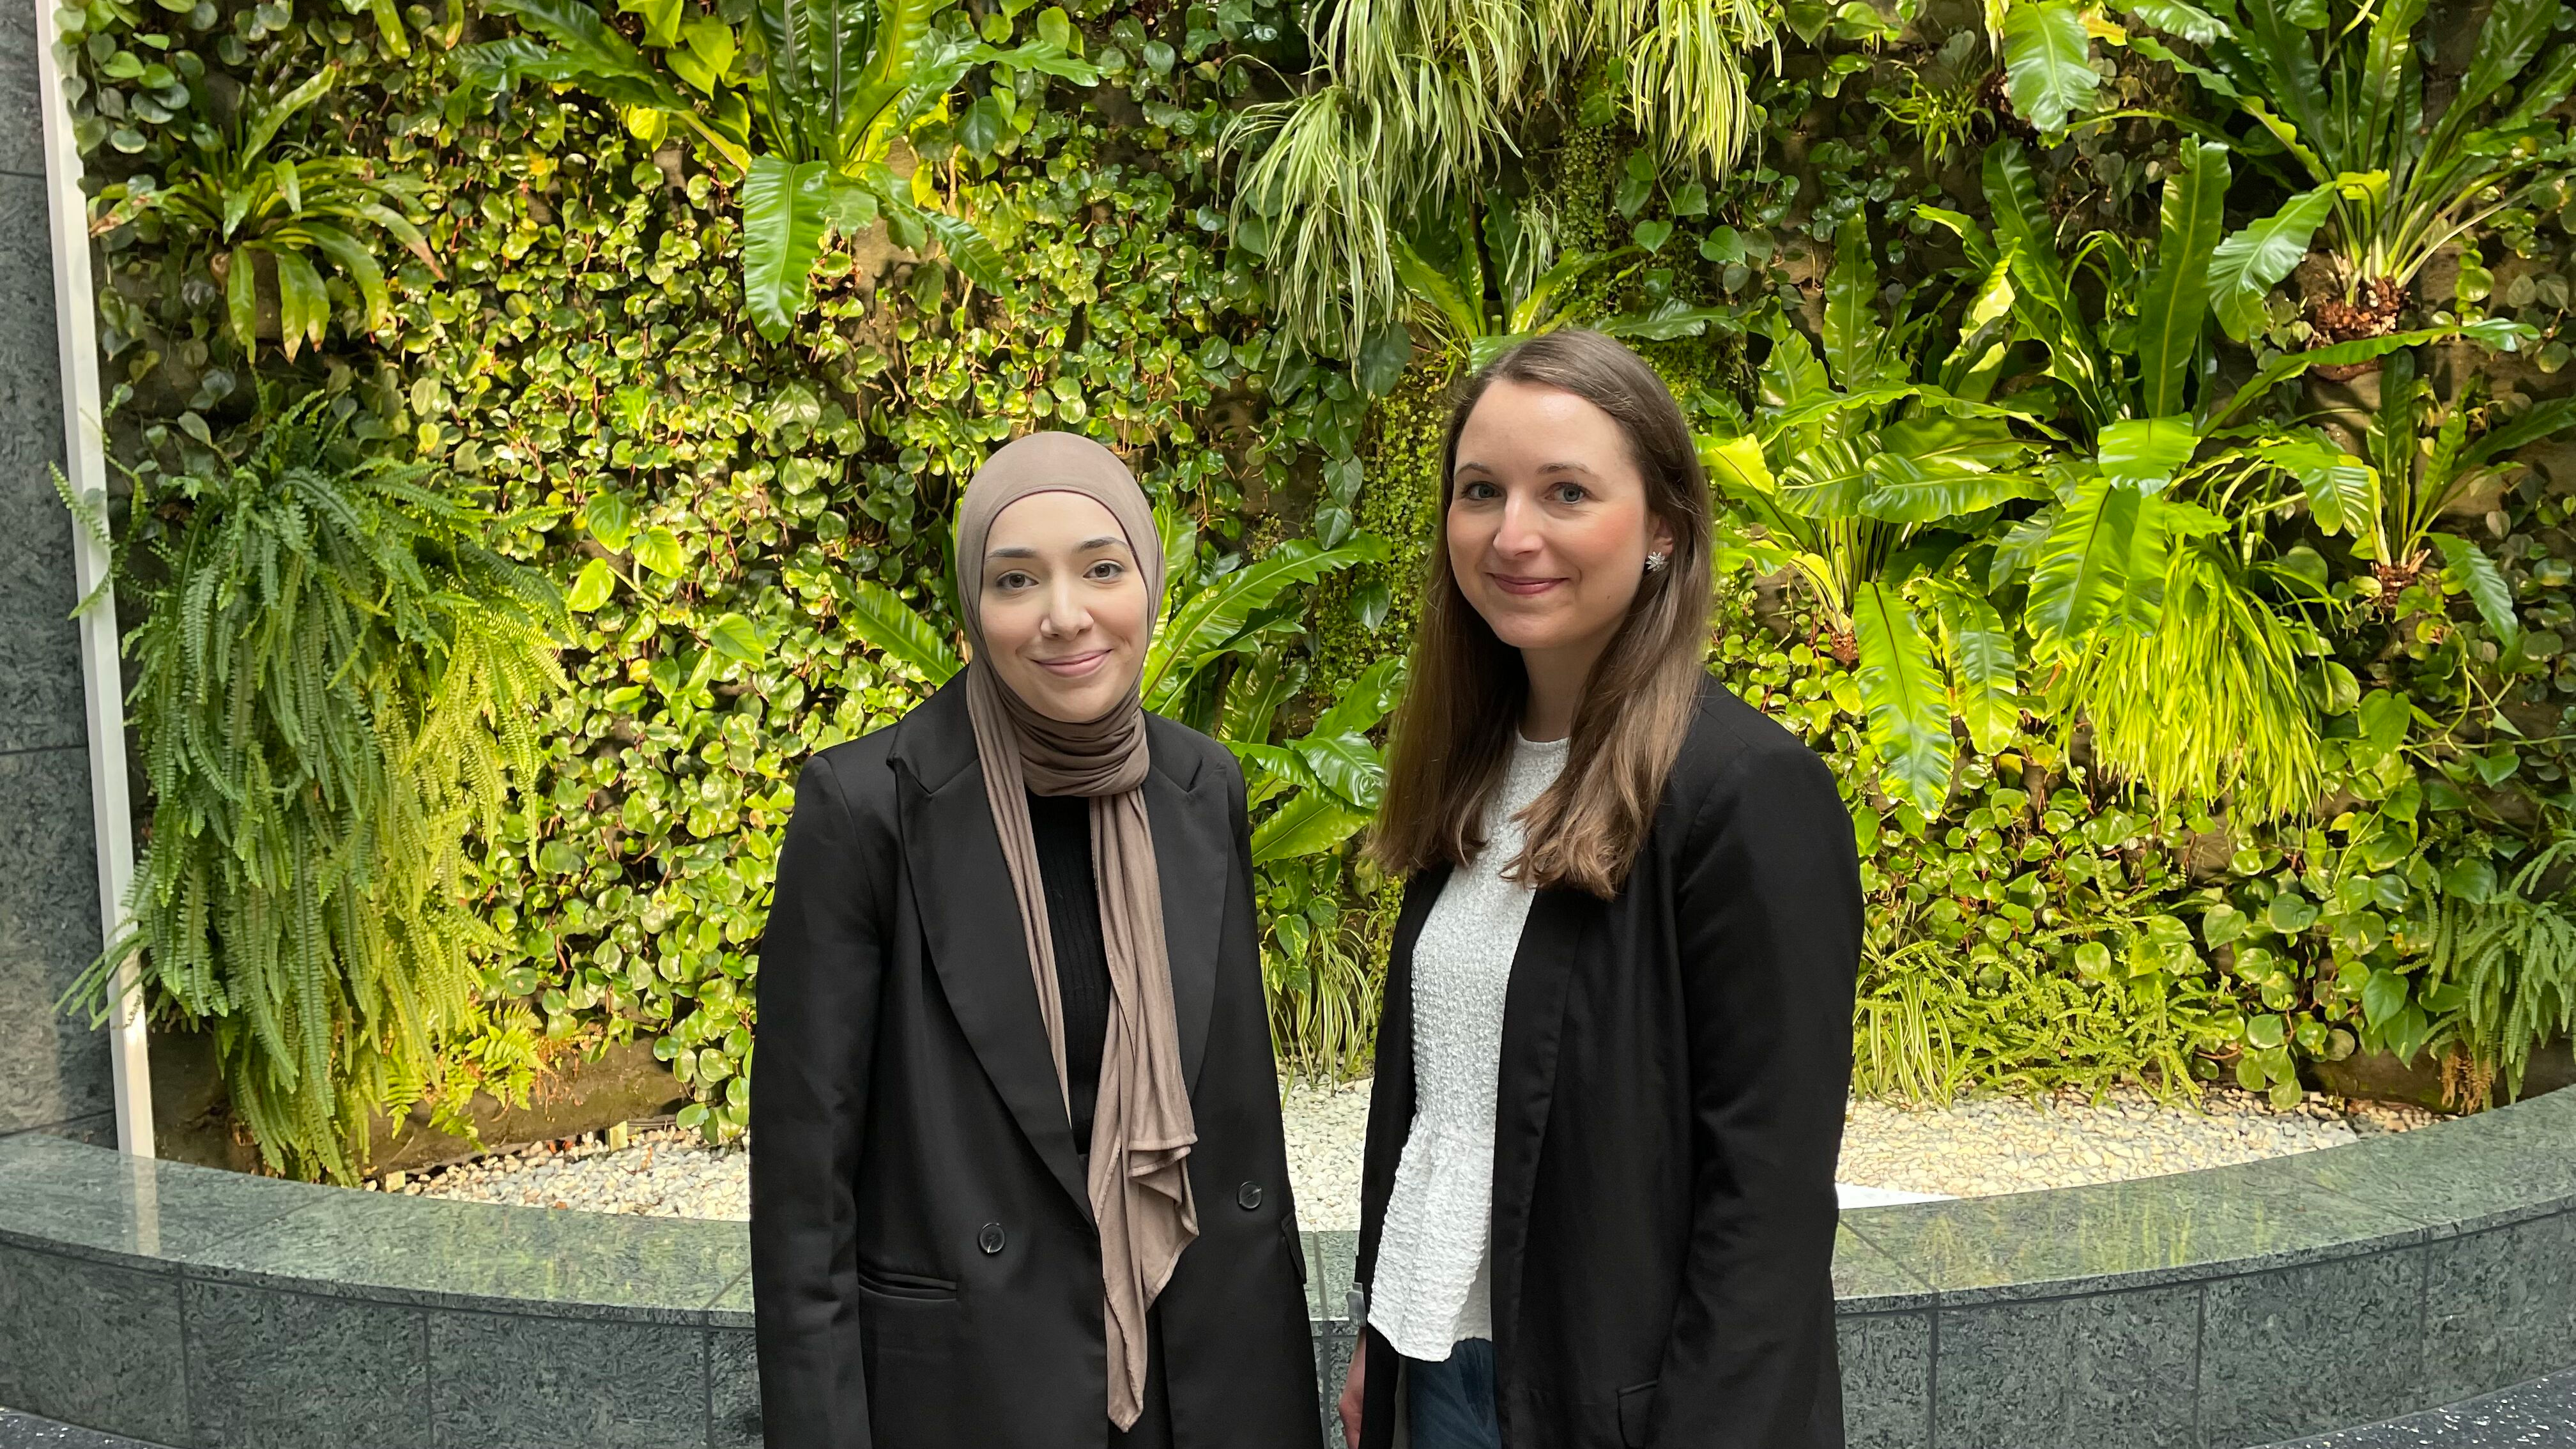 Meet our Project Partners: Jeannette Anniés and Fatmanur Karaca